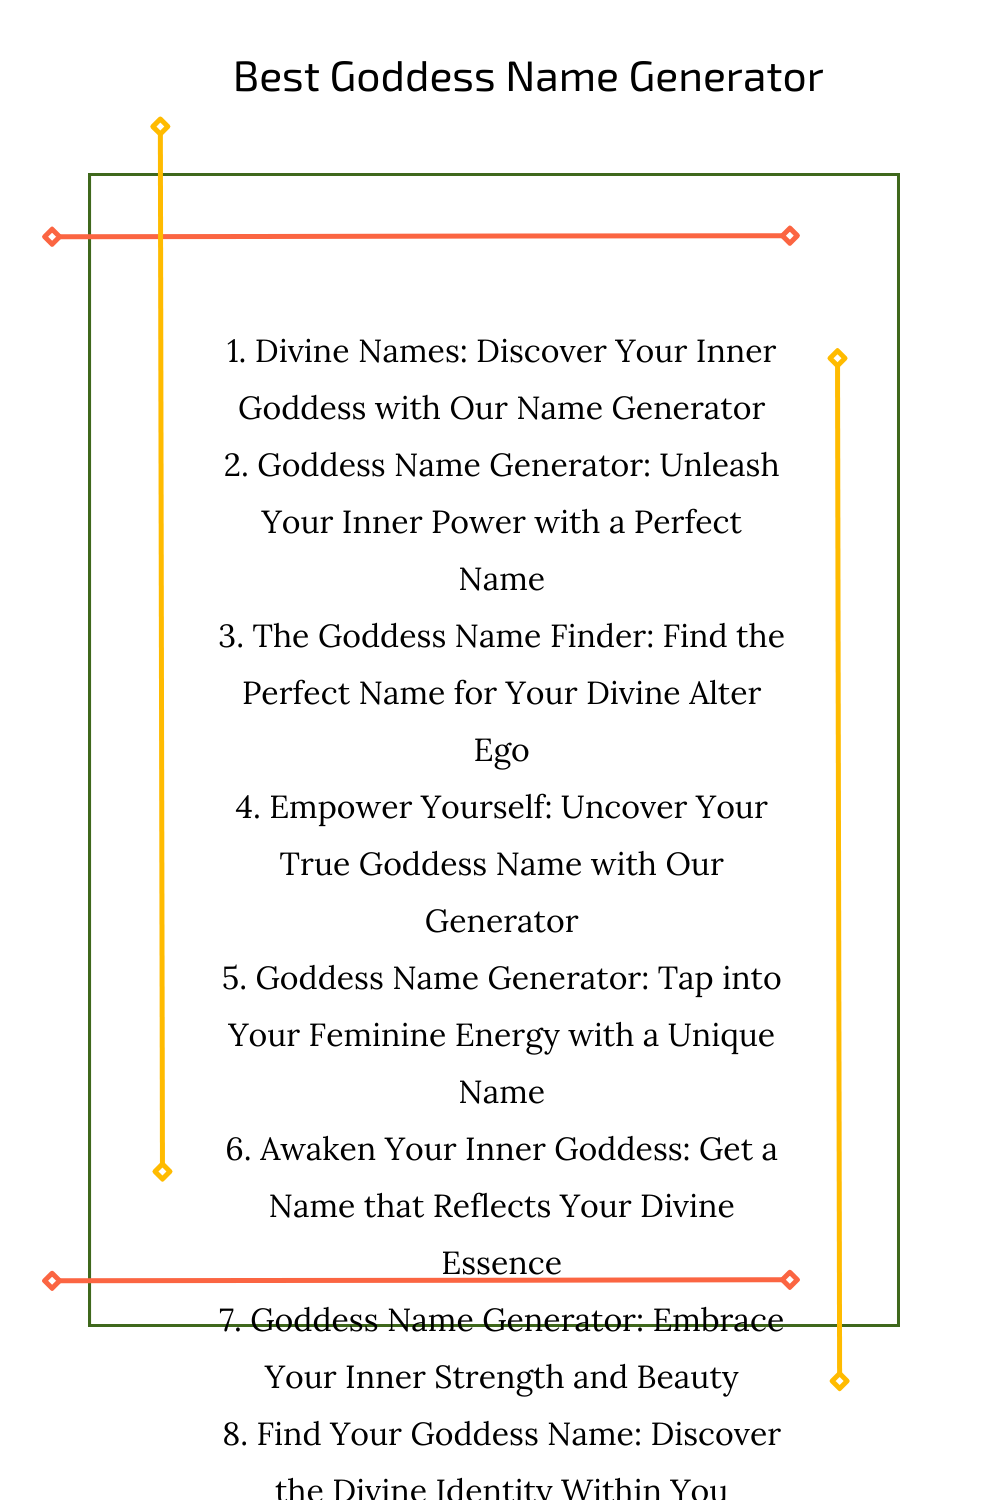 Best Goddess Name Generator